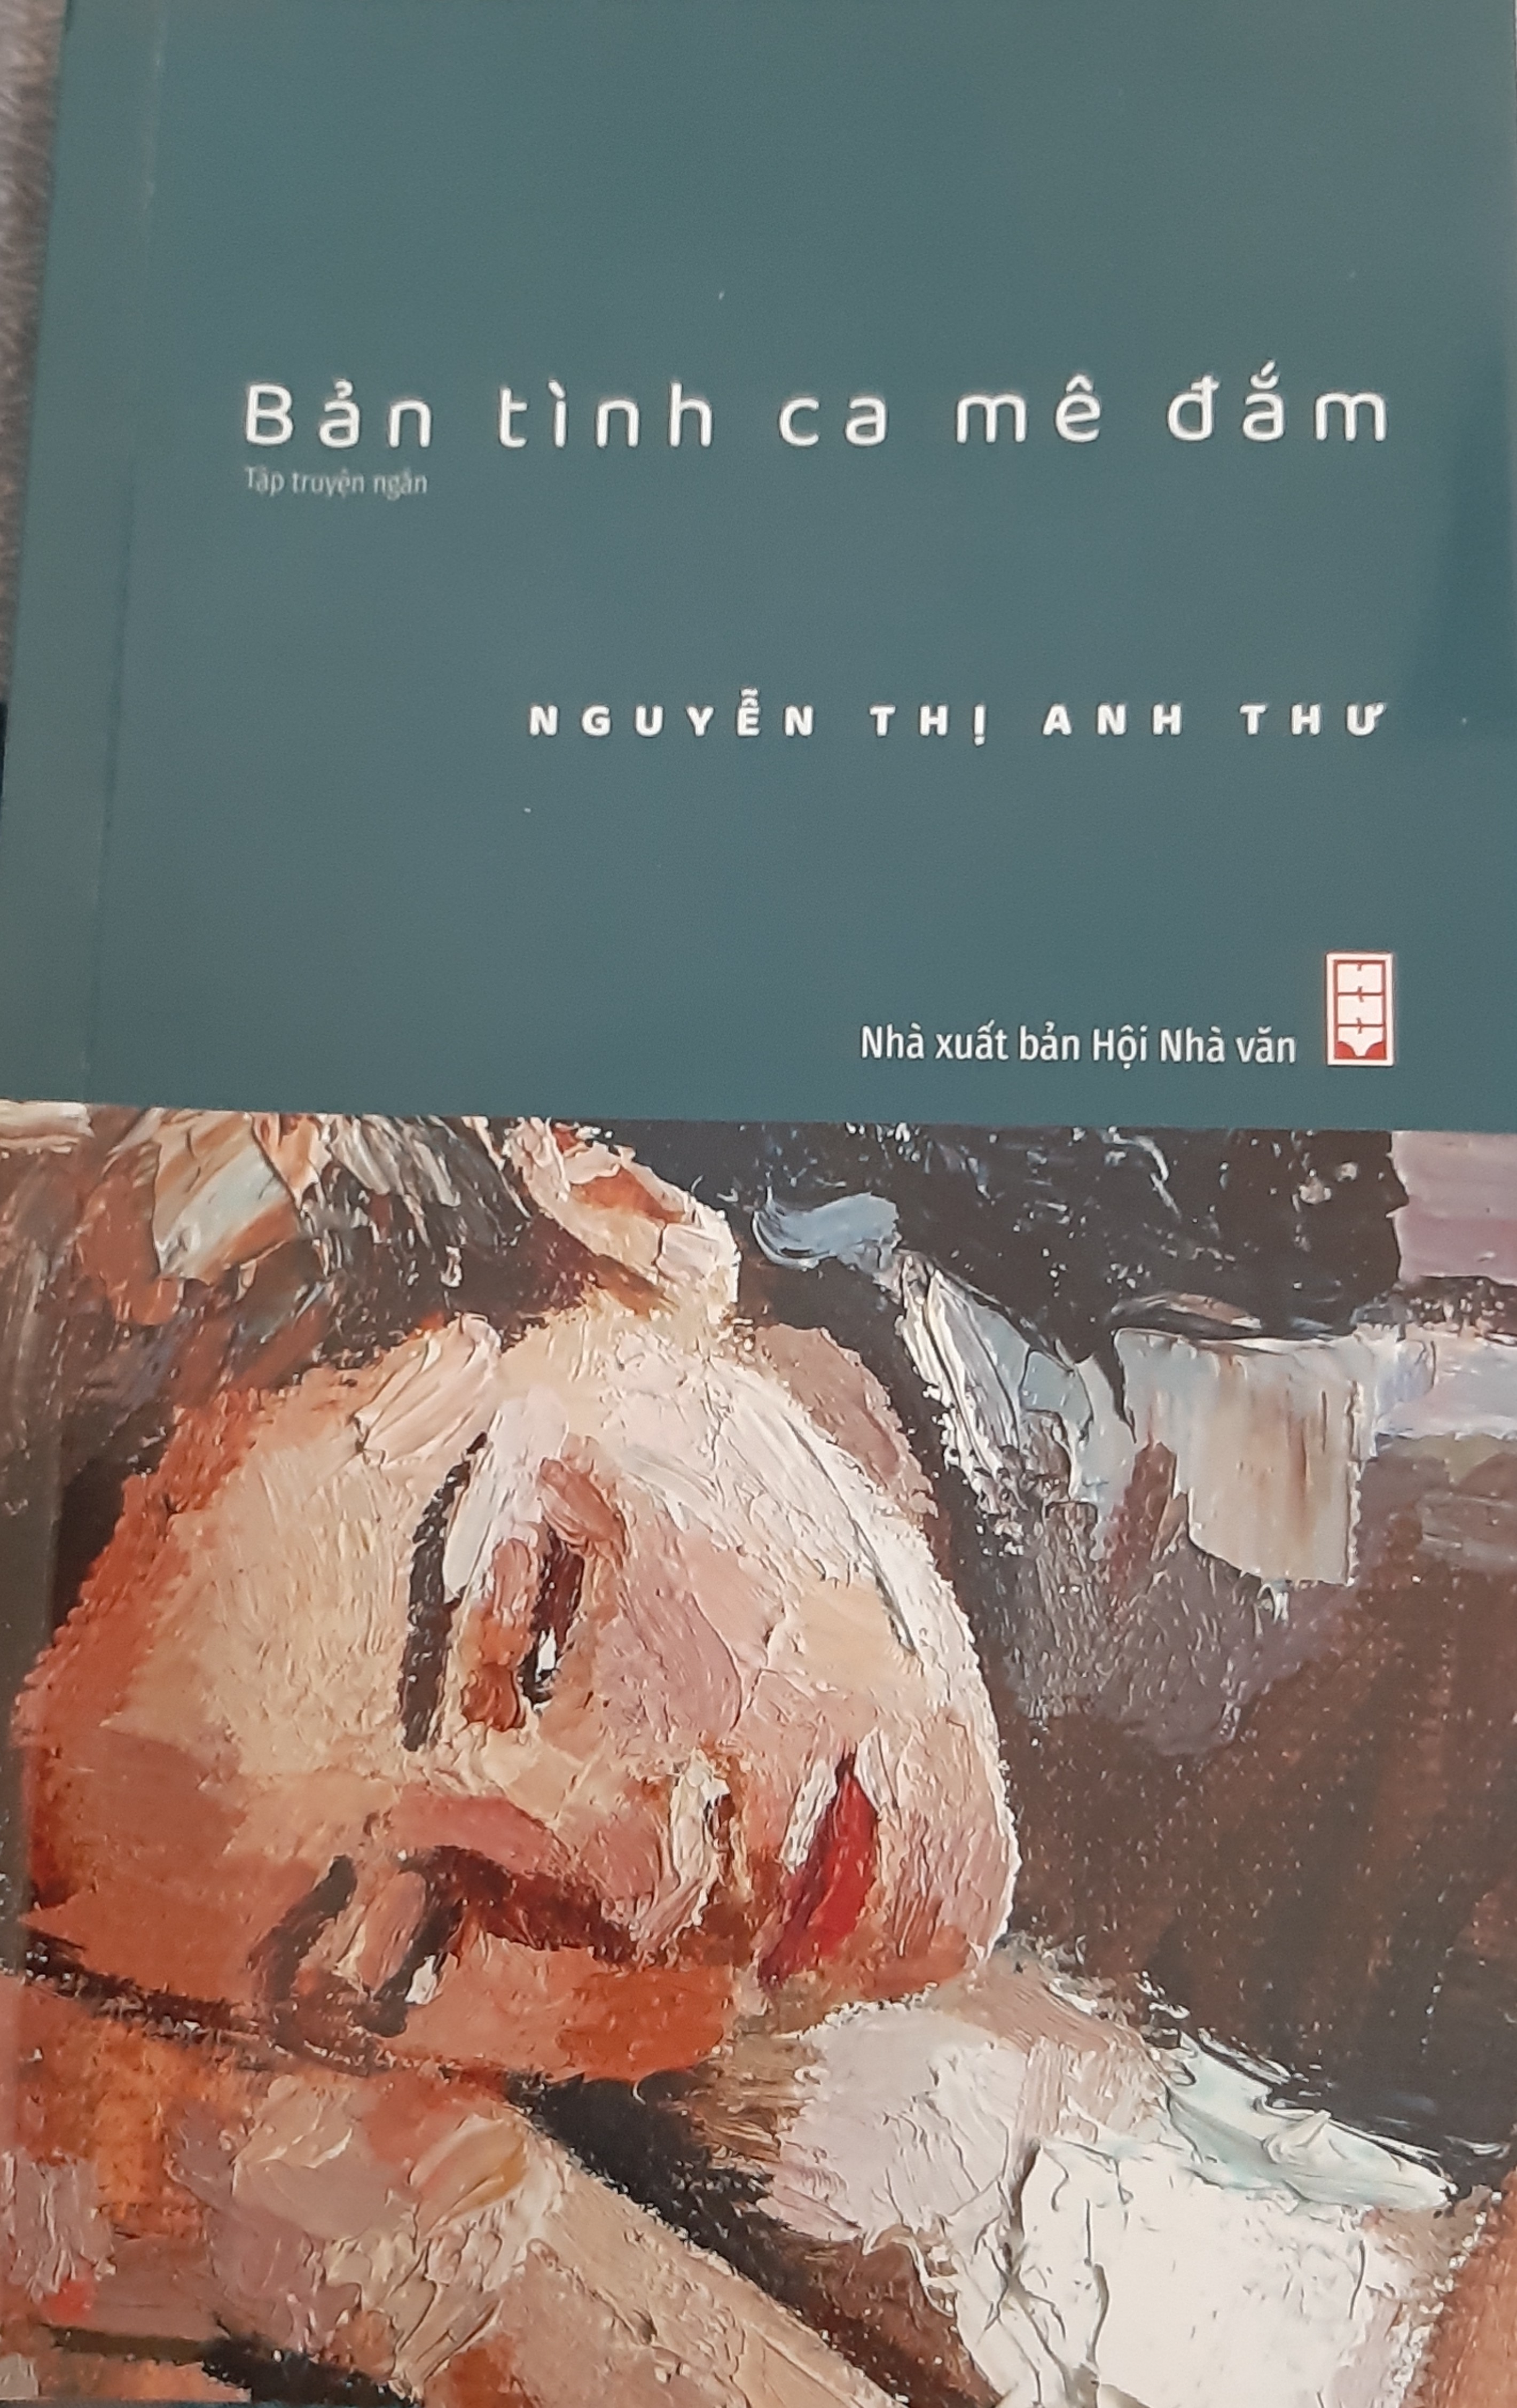 Cây bút văn xuôi nữ tinh tế Nguyễn Thị Anh Thư - 1